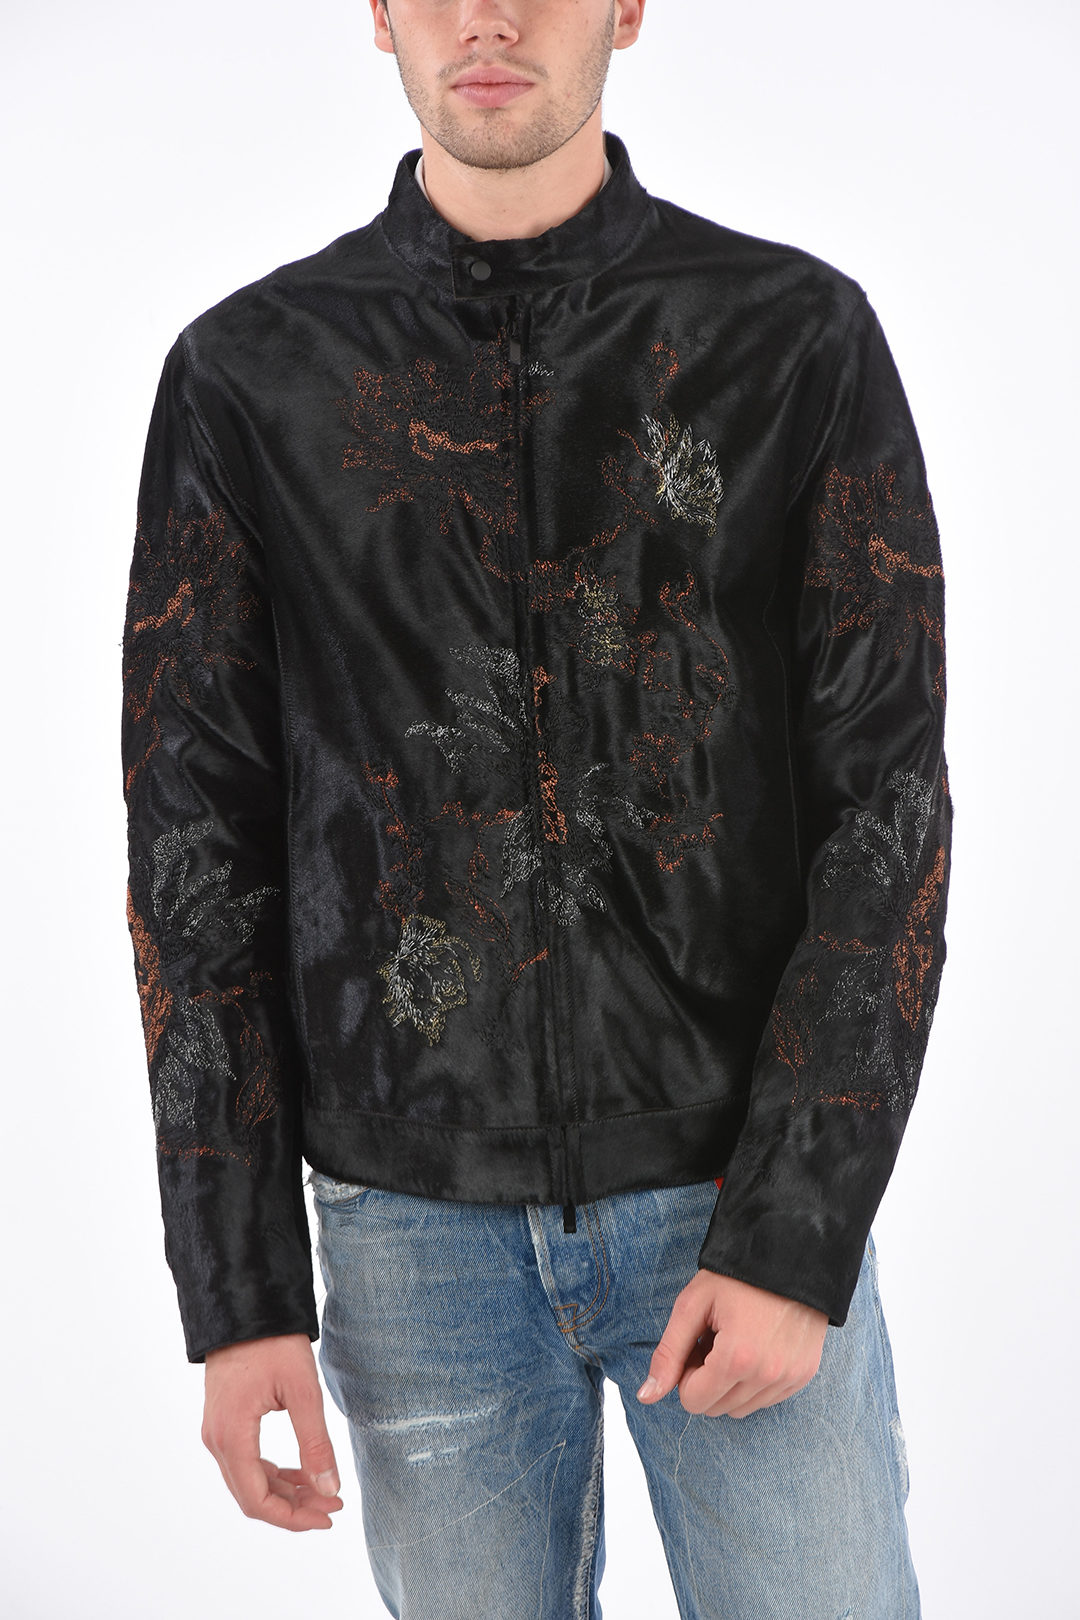 Armani EMPORIO ARMANI Embroidered Ponyskin Jacket men - Glamood Outlet